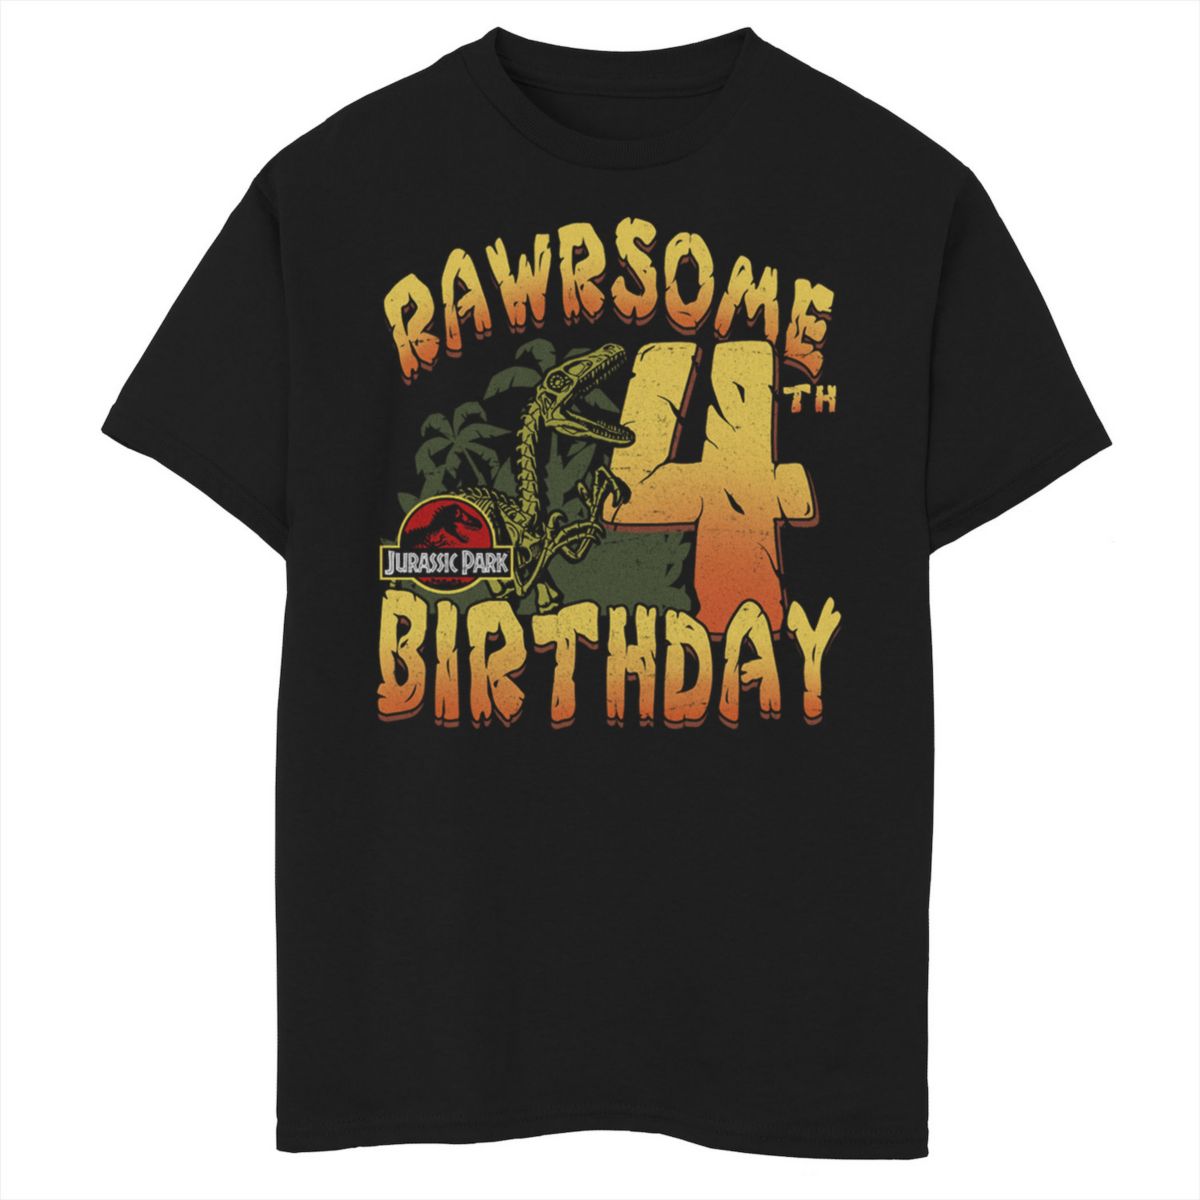 Футболка для мальчиков 8-20 Jurassic Park Rawrsome с рисунком на четвертый день рождения Jurassic Park